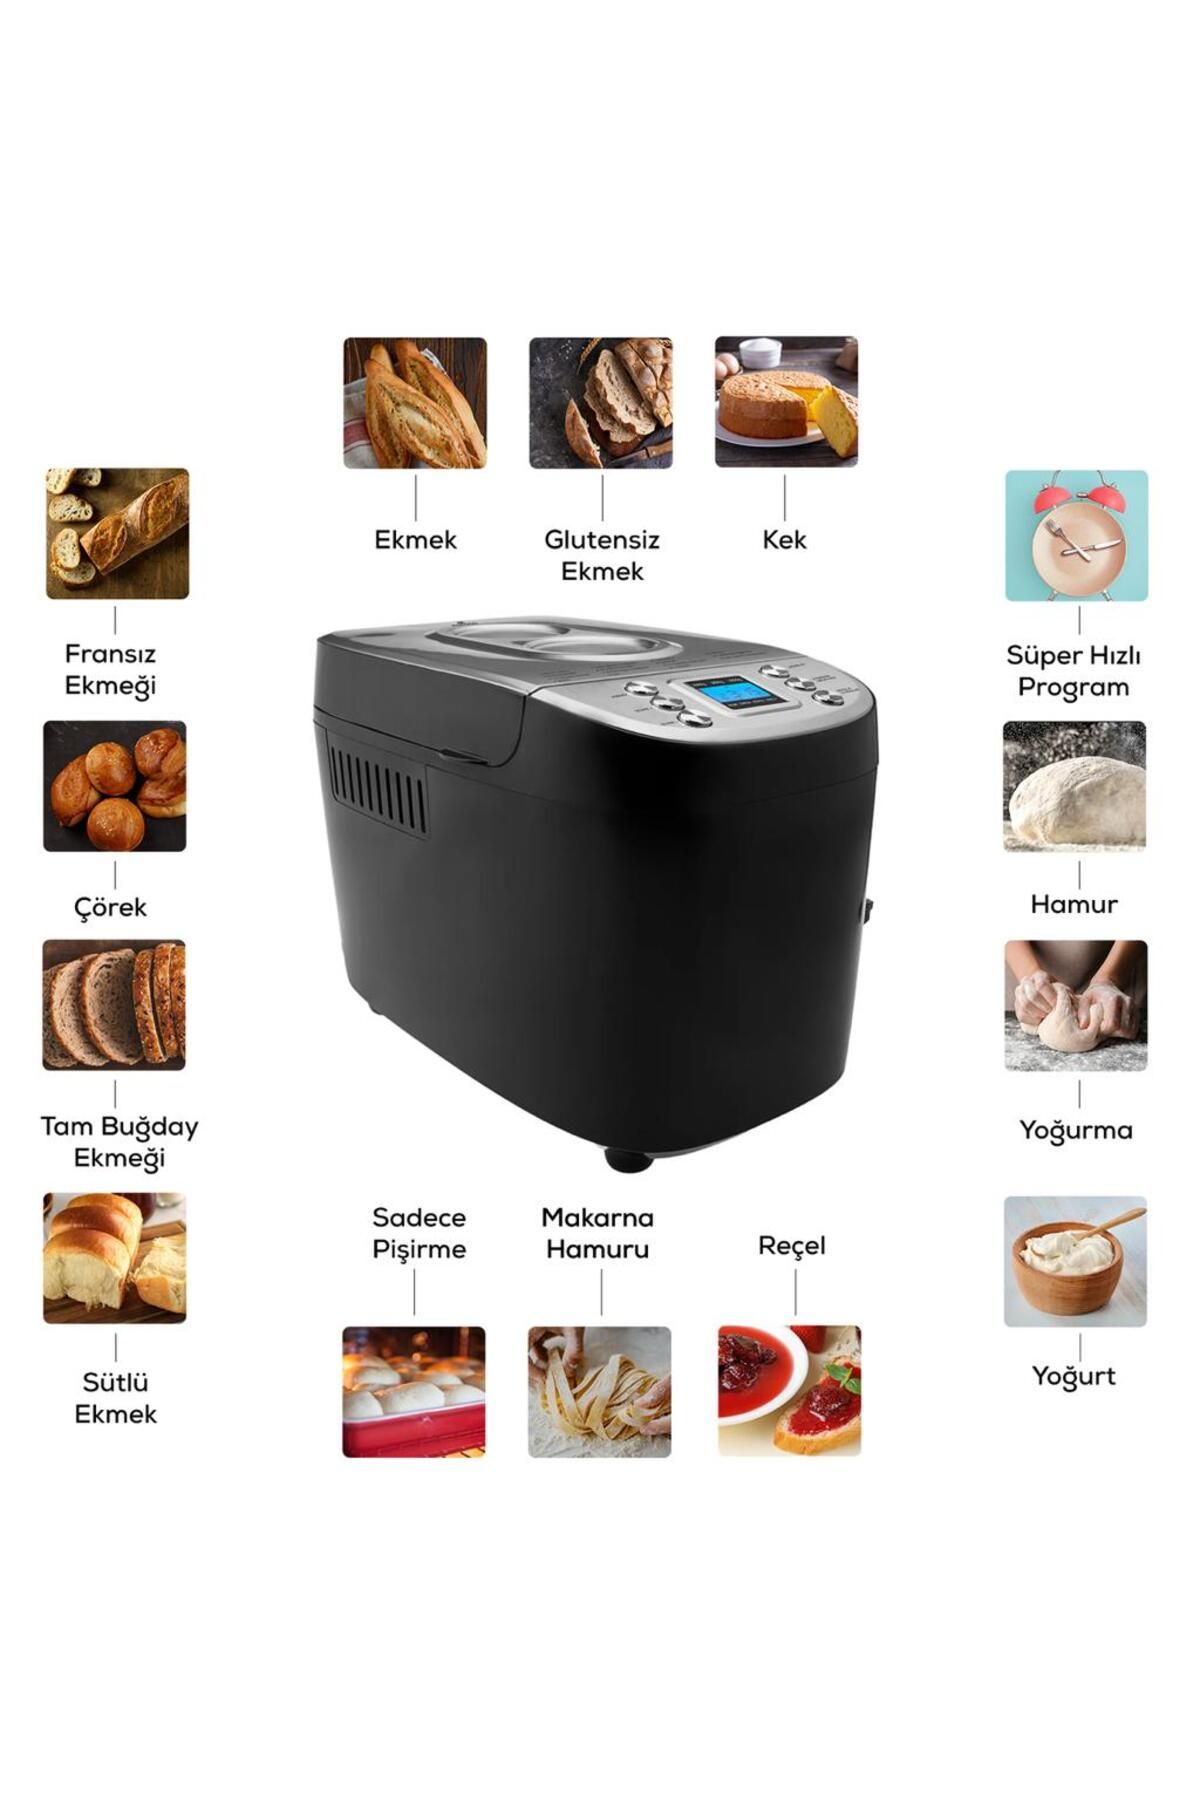 Karaca 15 Program 1500 gr Kapasite Premium Hamur Yoğurma ve Ekmek Yapma Makinesi 45 Farklı Tarifli Kitapçık